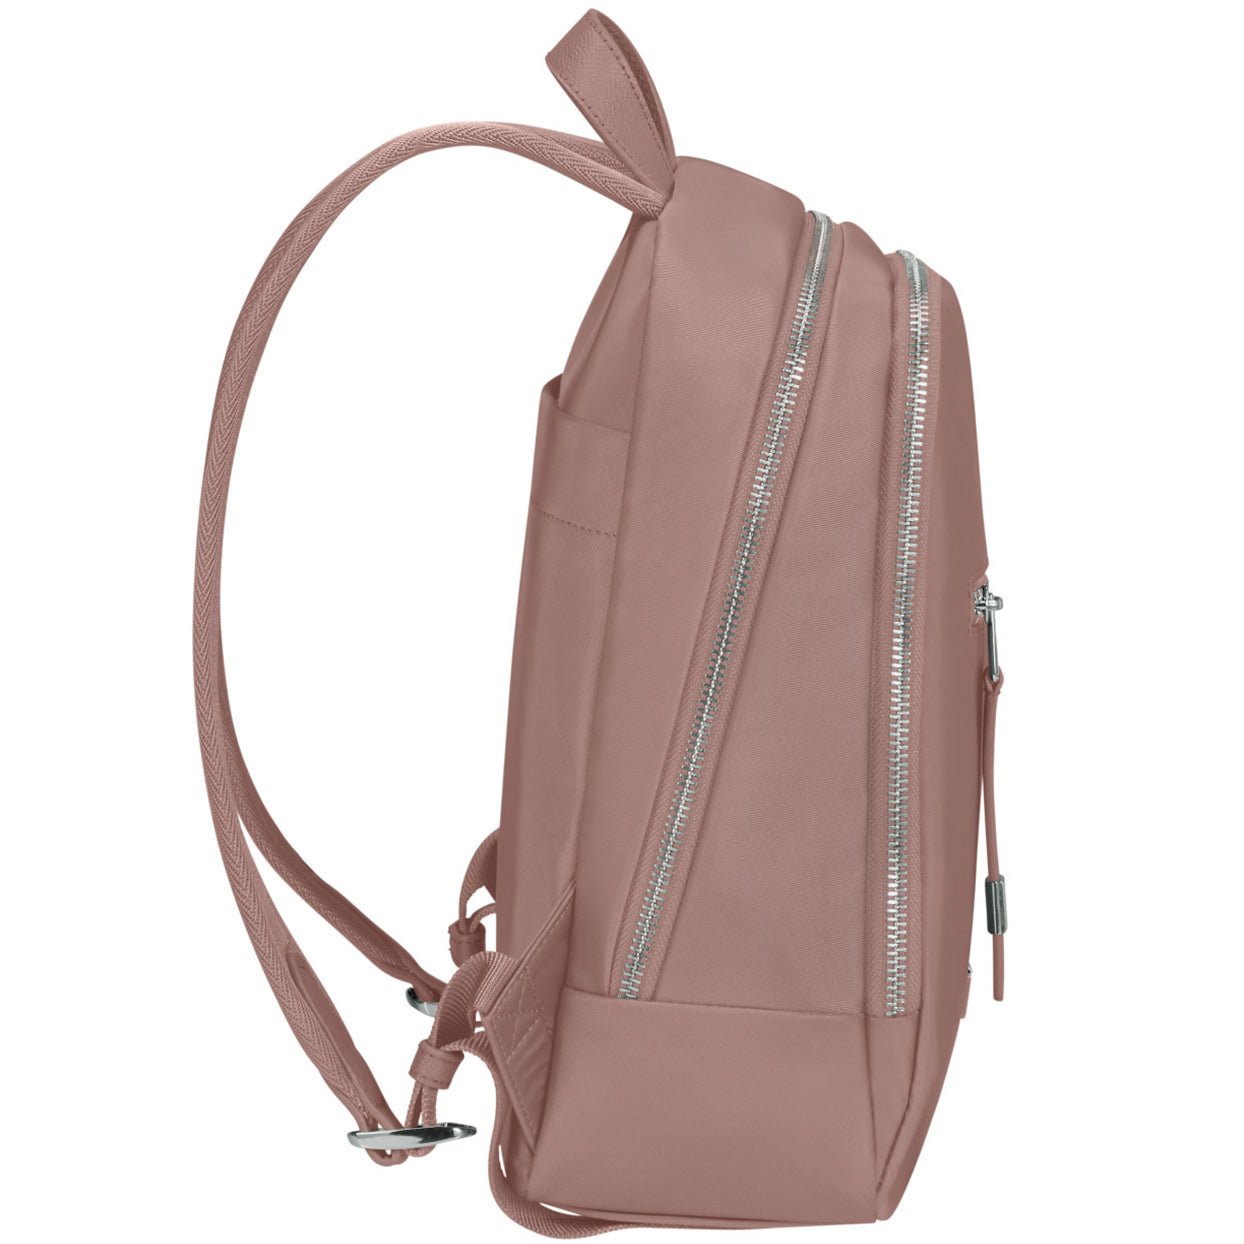 Samsonite Be-Her Backpack S 30 cm - Antique Pink